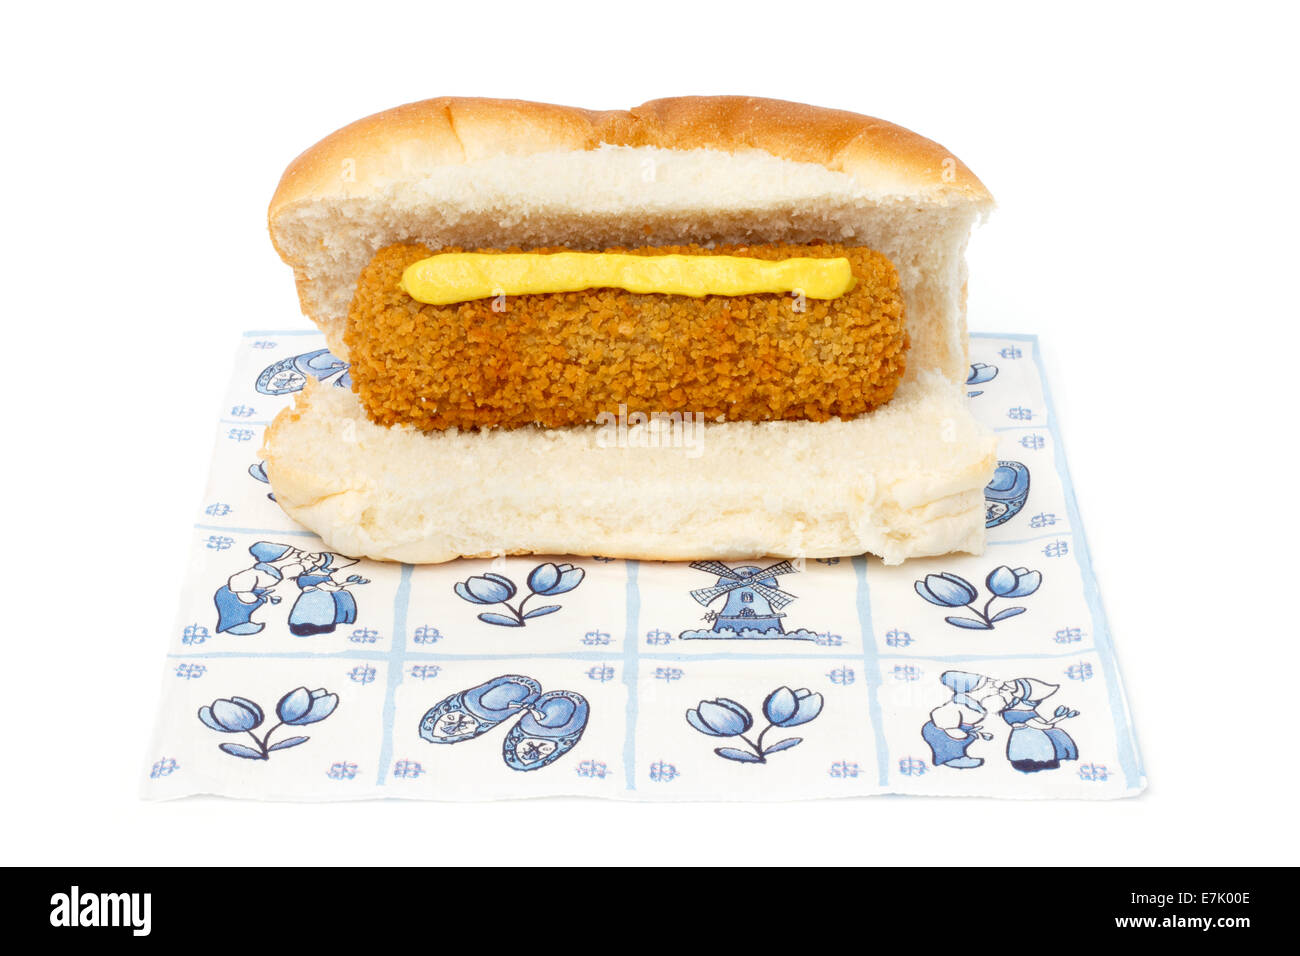 Croquette néerlandaise sandwich avec de la moutarde sur une serviette contre fond blanc Banque D'Images